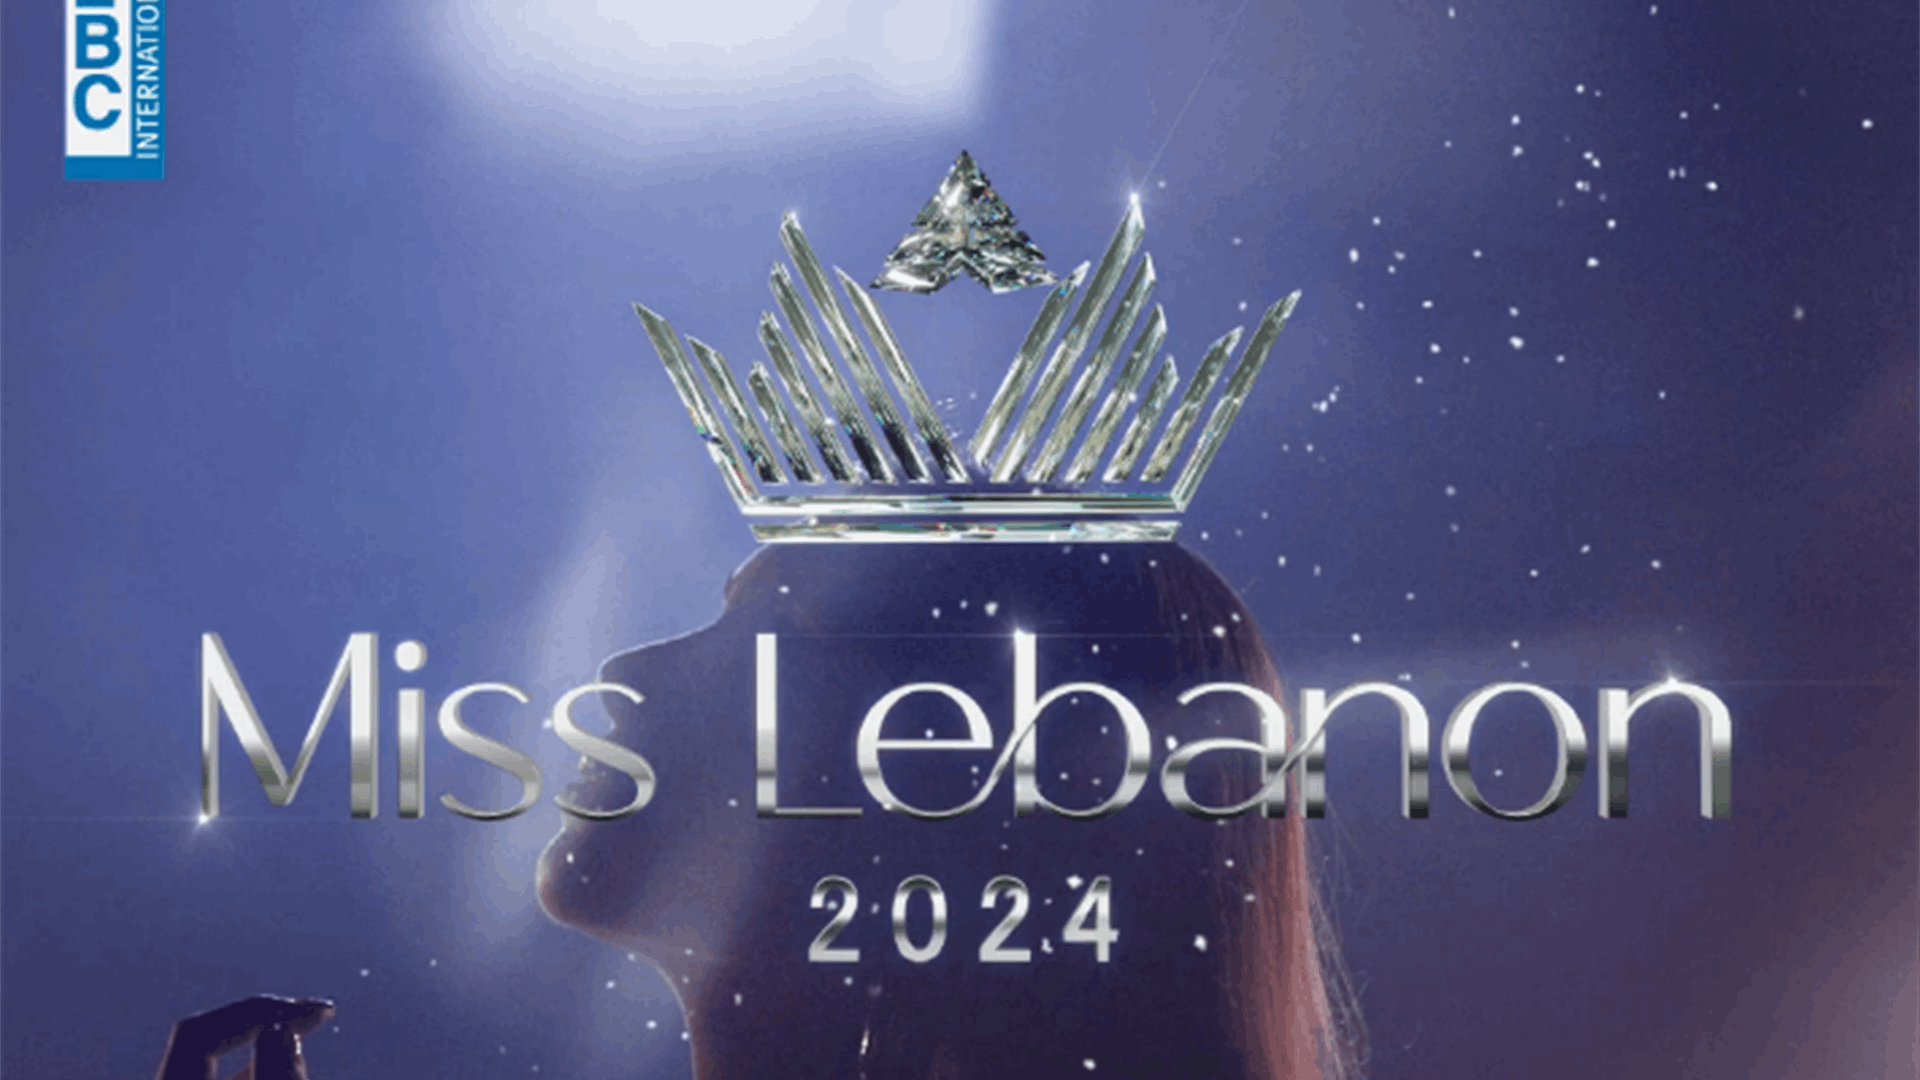 لحظات تفصلنا عن انطلاق حفل انتخاب ملكة جمال لبنان 2024... لا تفوتوا متابعة هذا الحدث الضخم عبر شاشة الـ LBCI والموقع الالكتروني عبر الرابط: https://www.lbcgroup.tv/live/ar